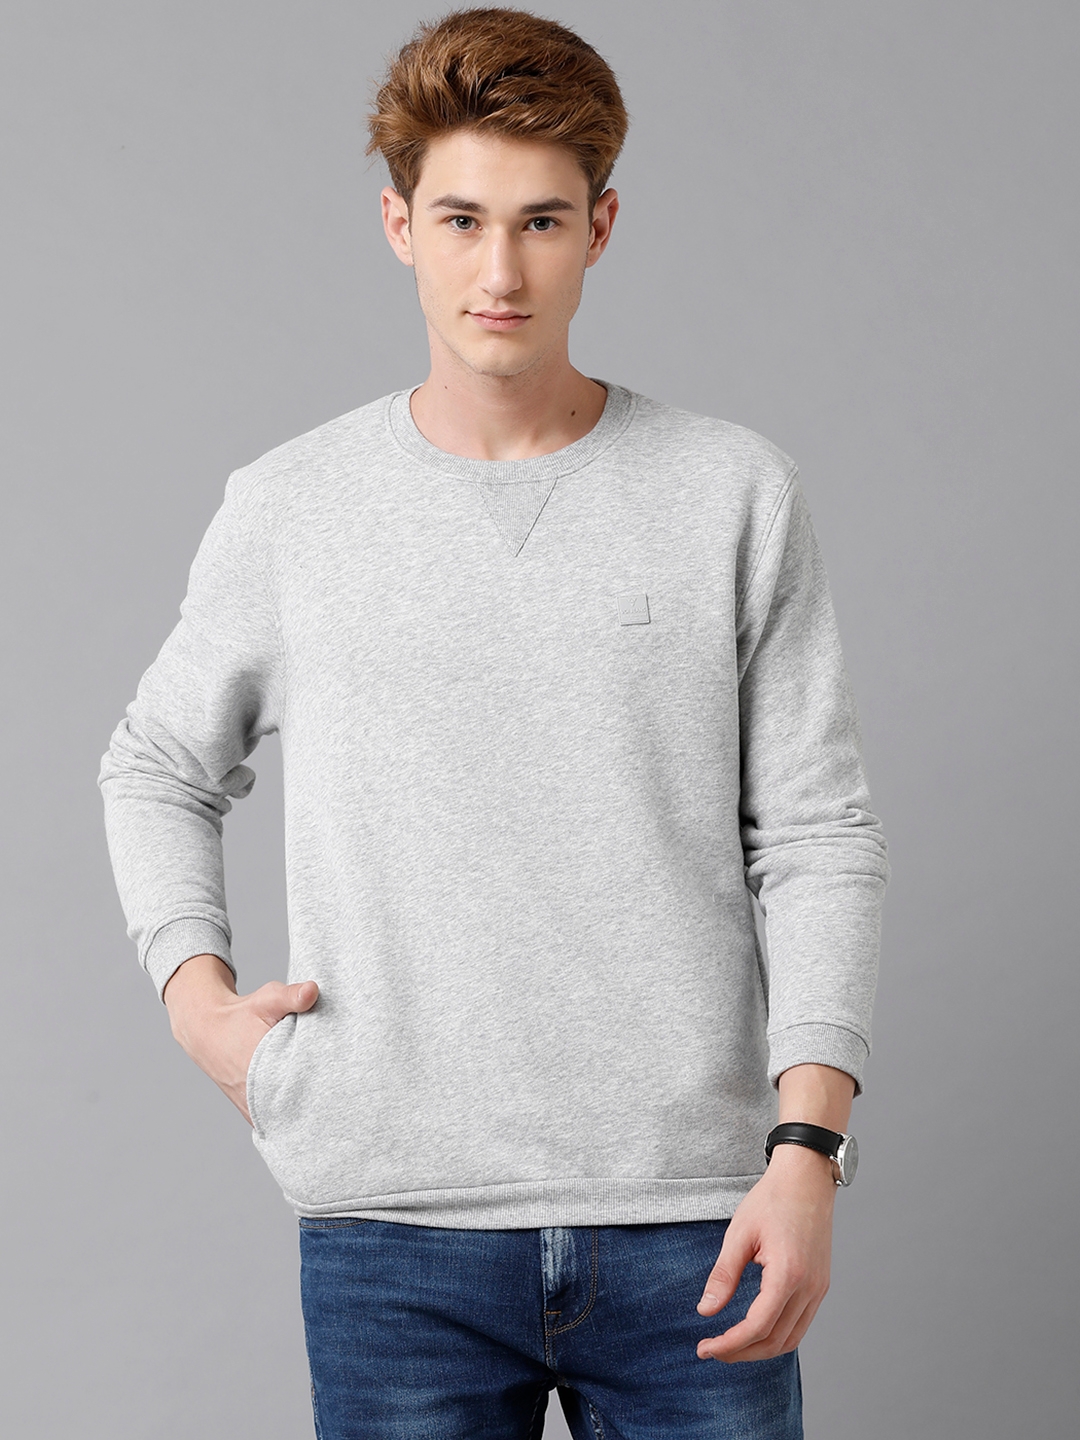 VOI Jeans Men's Solid Grey Brushed Fleece Regular Fit Sweatshirt